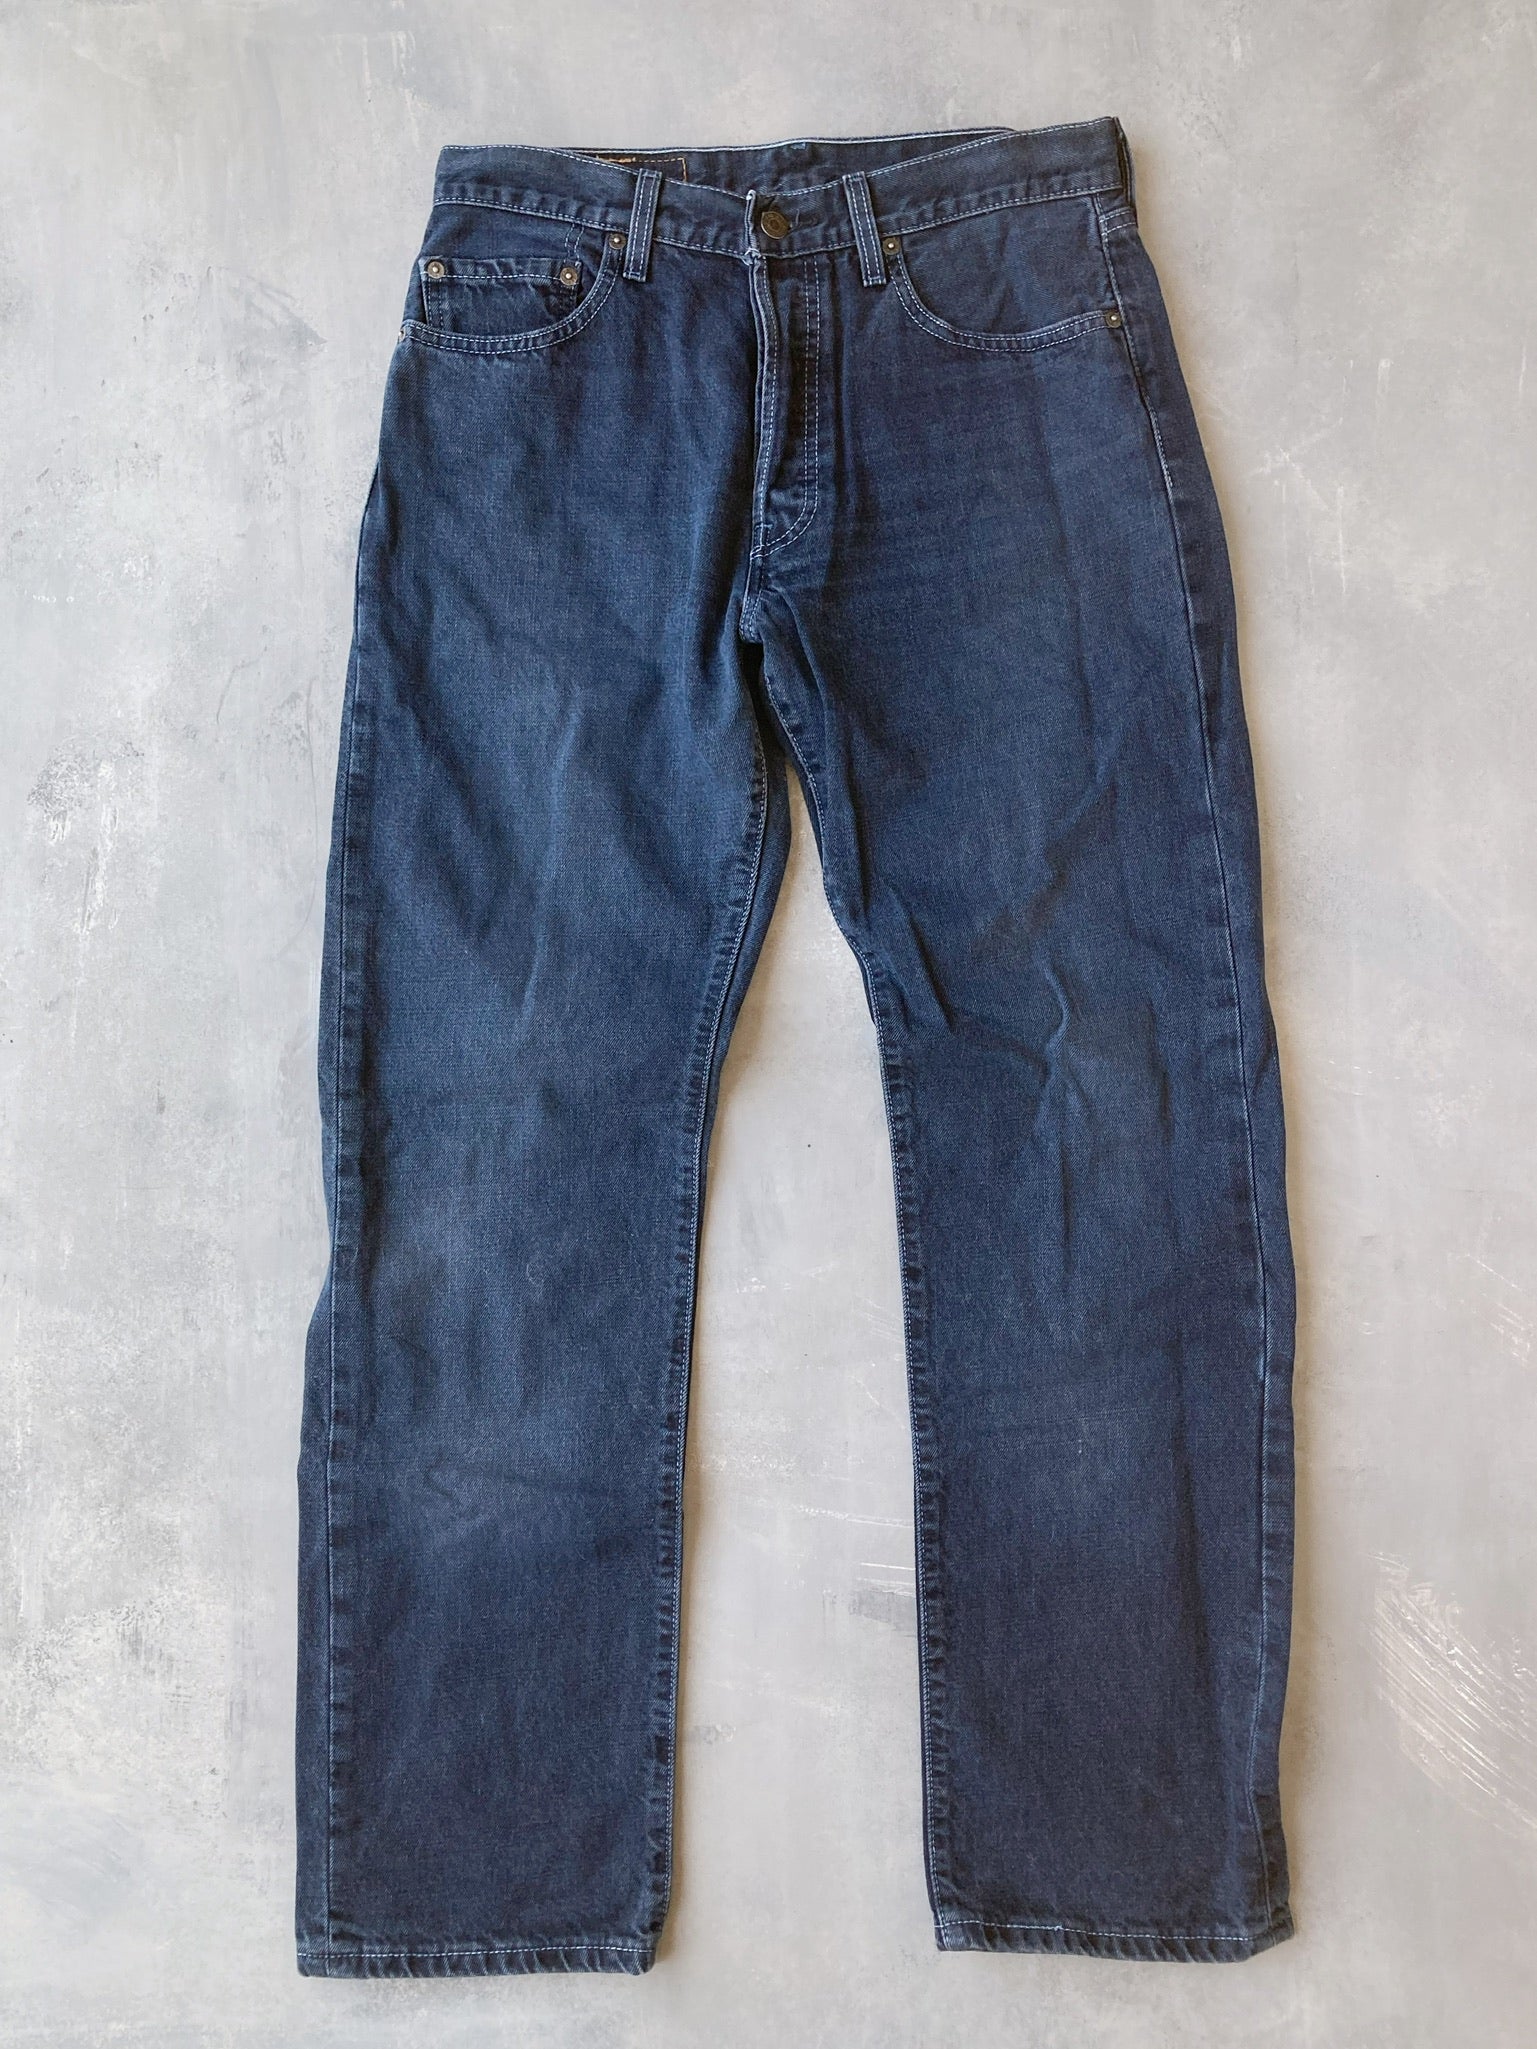 Indigo Levi's 501 Jeans 90's - 31x31 – Lot 1 Vintage